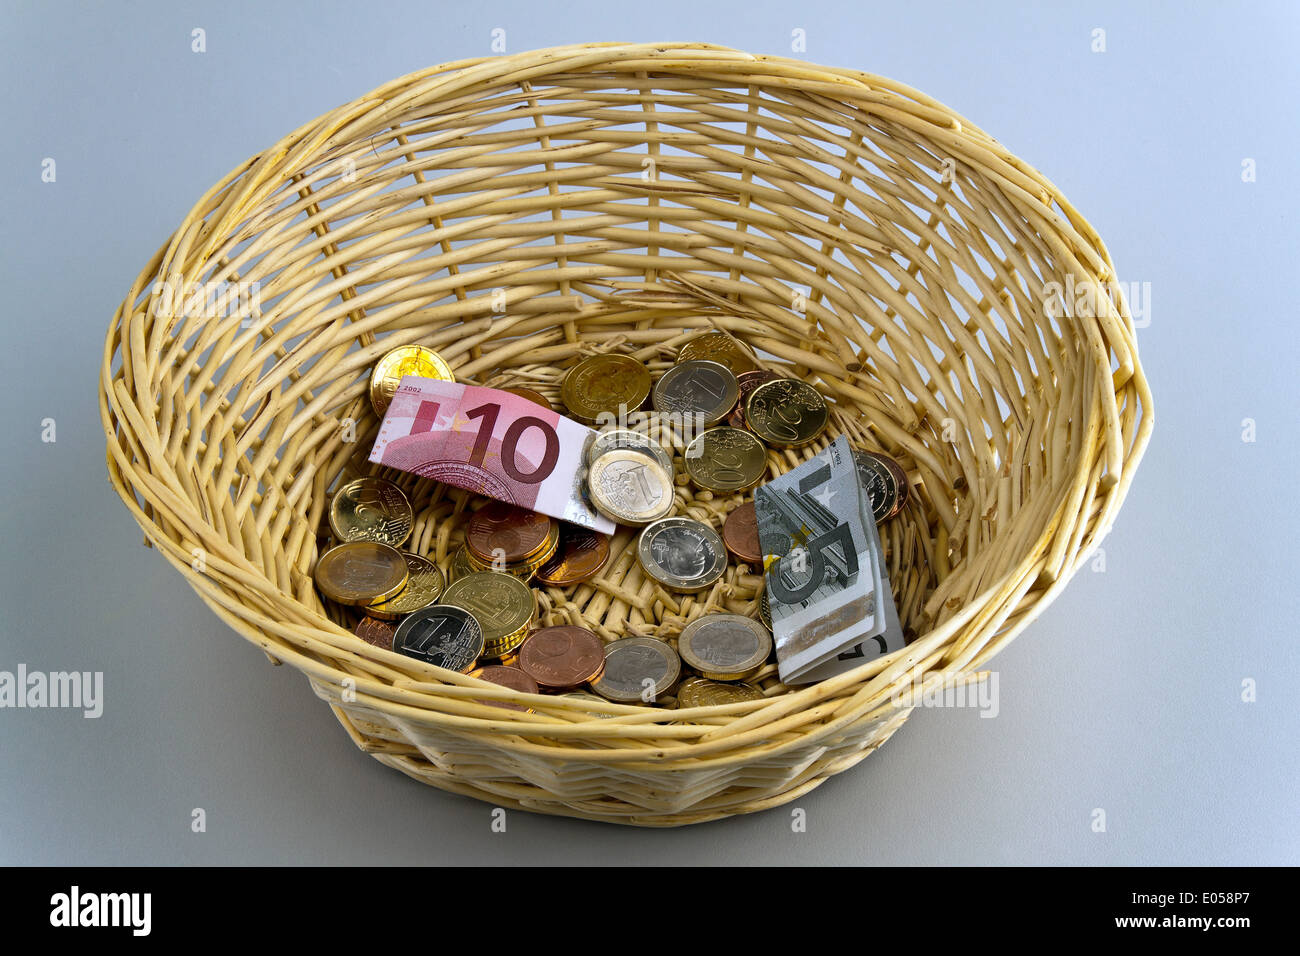 A donation basket for collection. Money donation with euro, Ein Spendenkorb fuer Sammlung. Geld Spende mit Euro Stock Photo